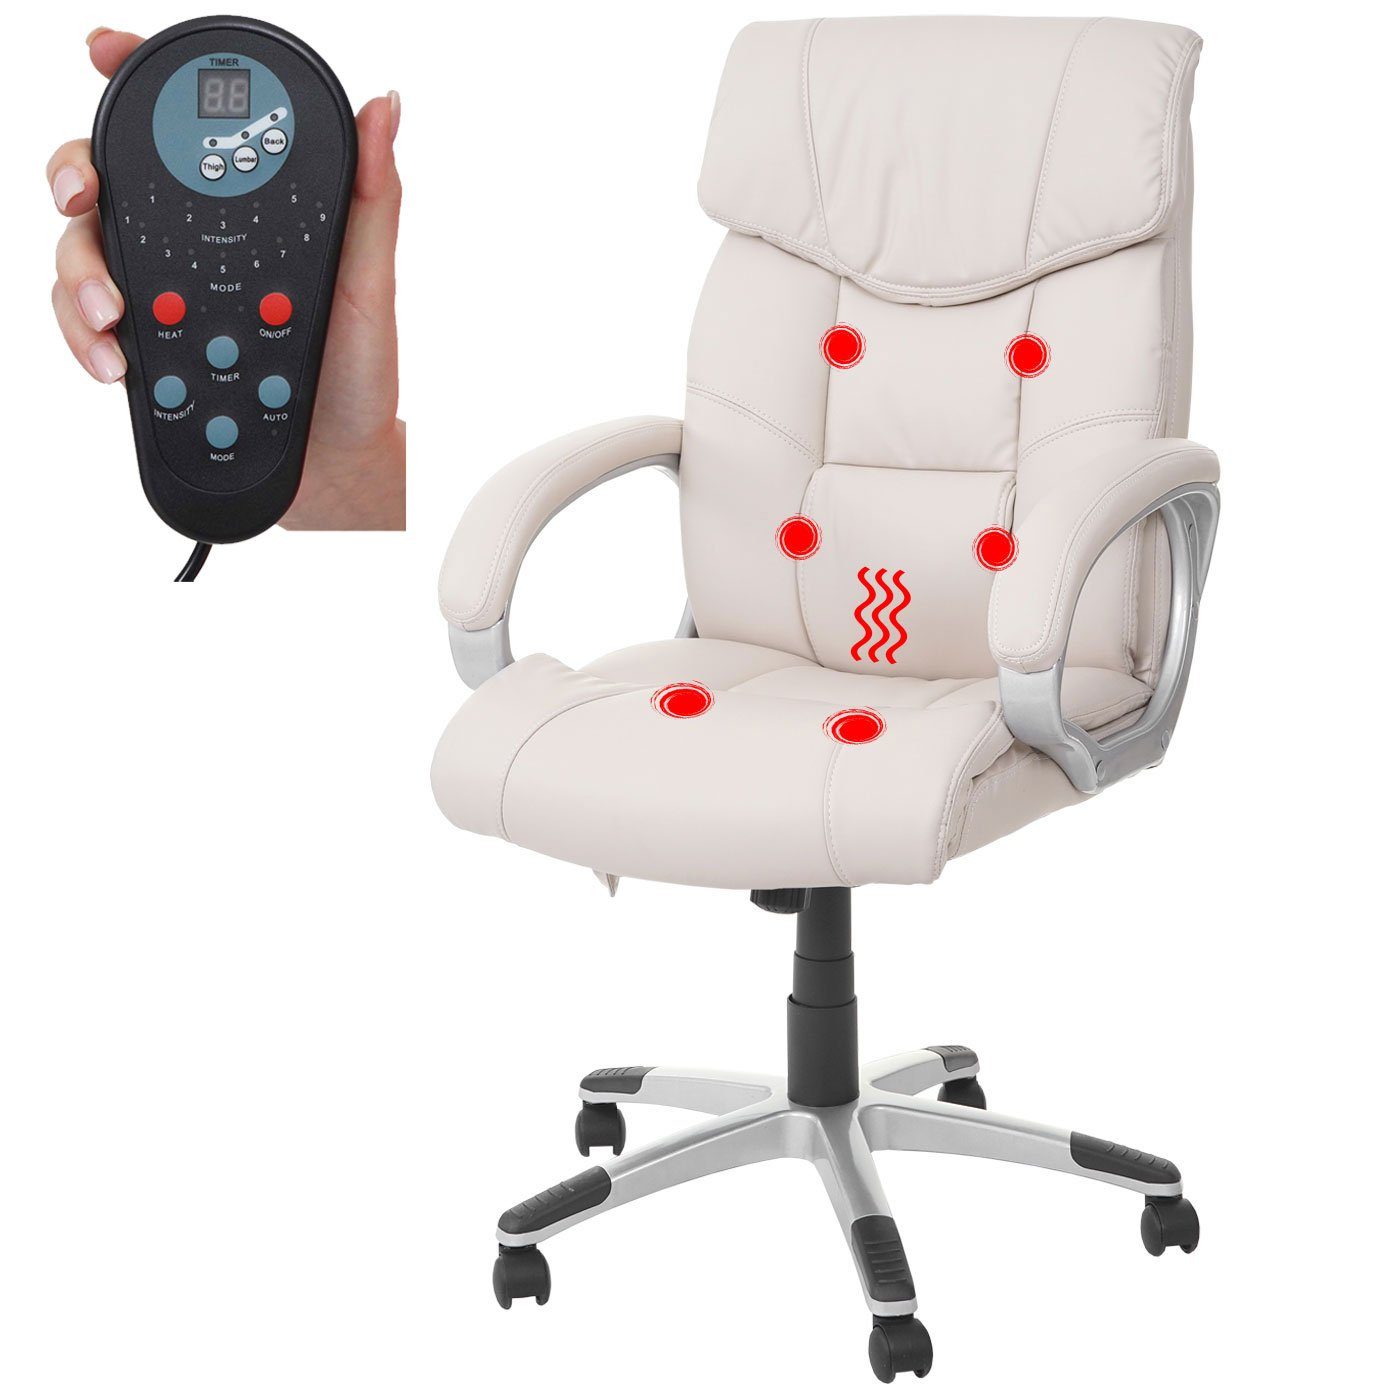 MCW Schreibtischstuhl MCW-A71-M, 6-Punkt-Massage, 9 Timer Heizfunktion Massageprogramme, Rückenlehne, creme